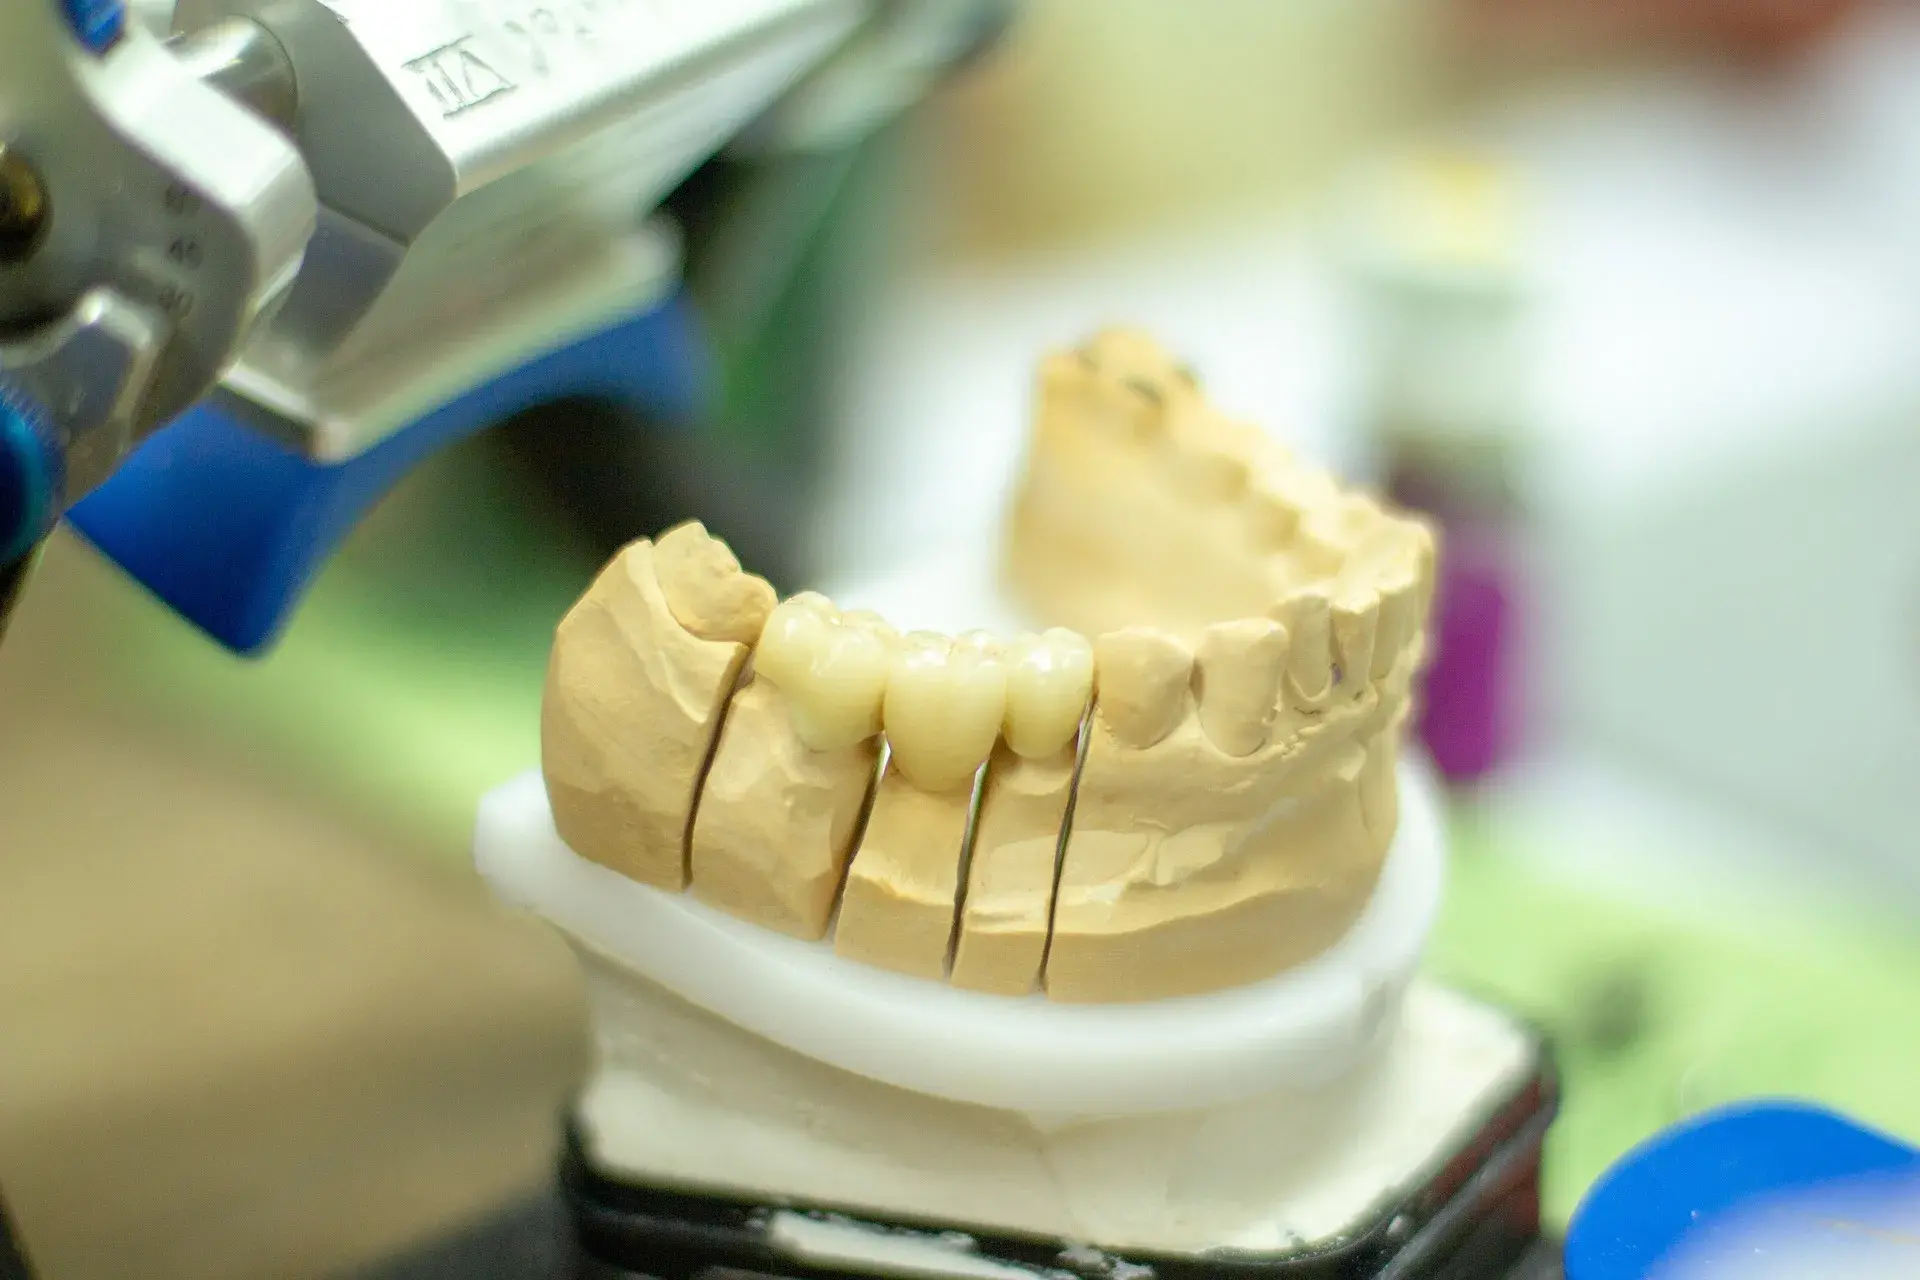 Konsultasi Gigi: Penggunaan Gigi Palsu